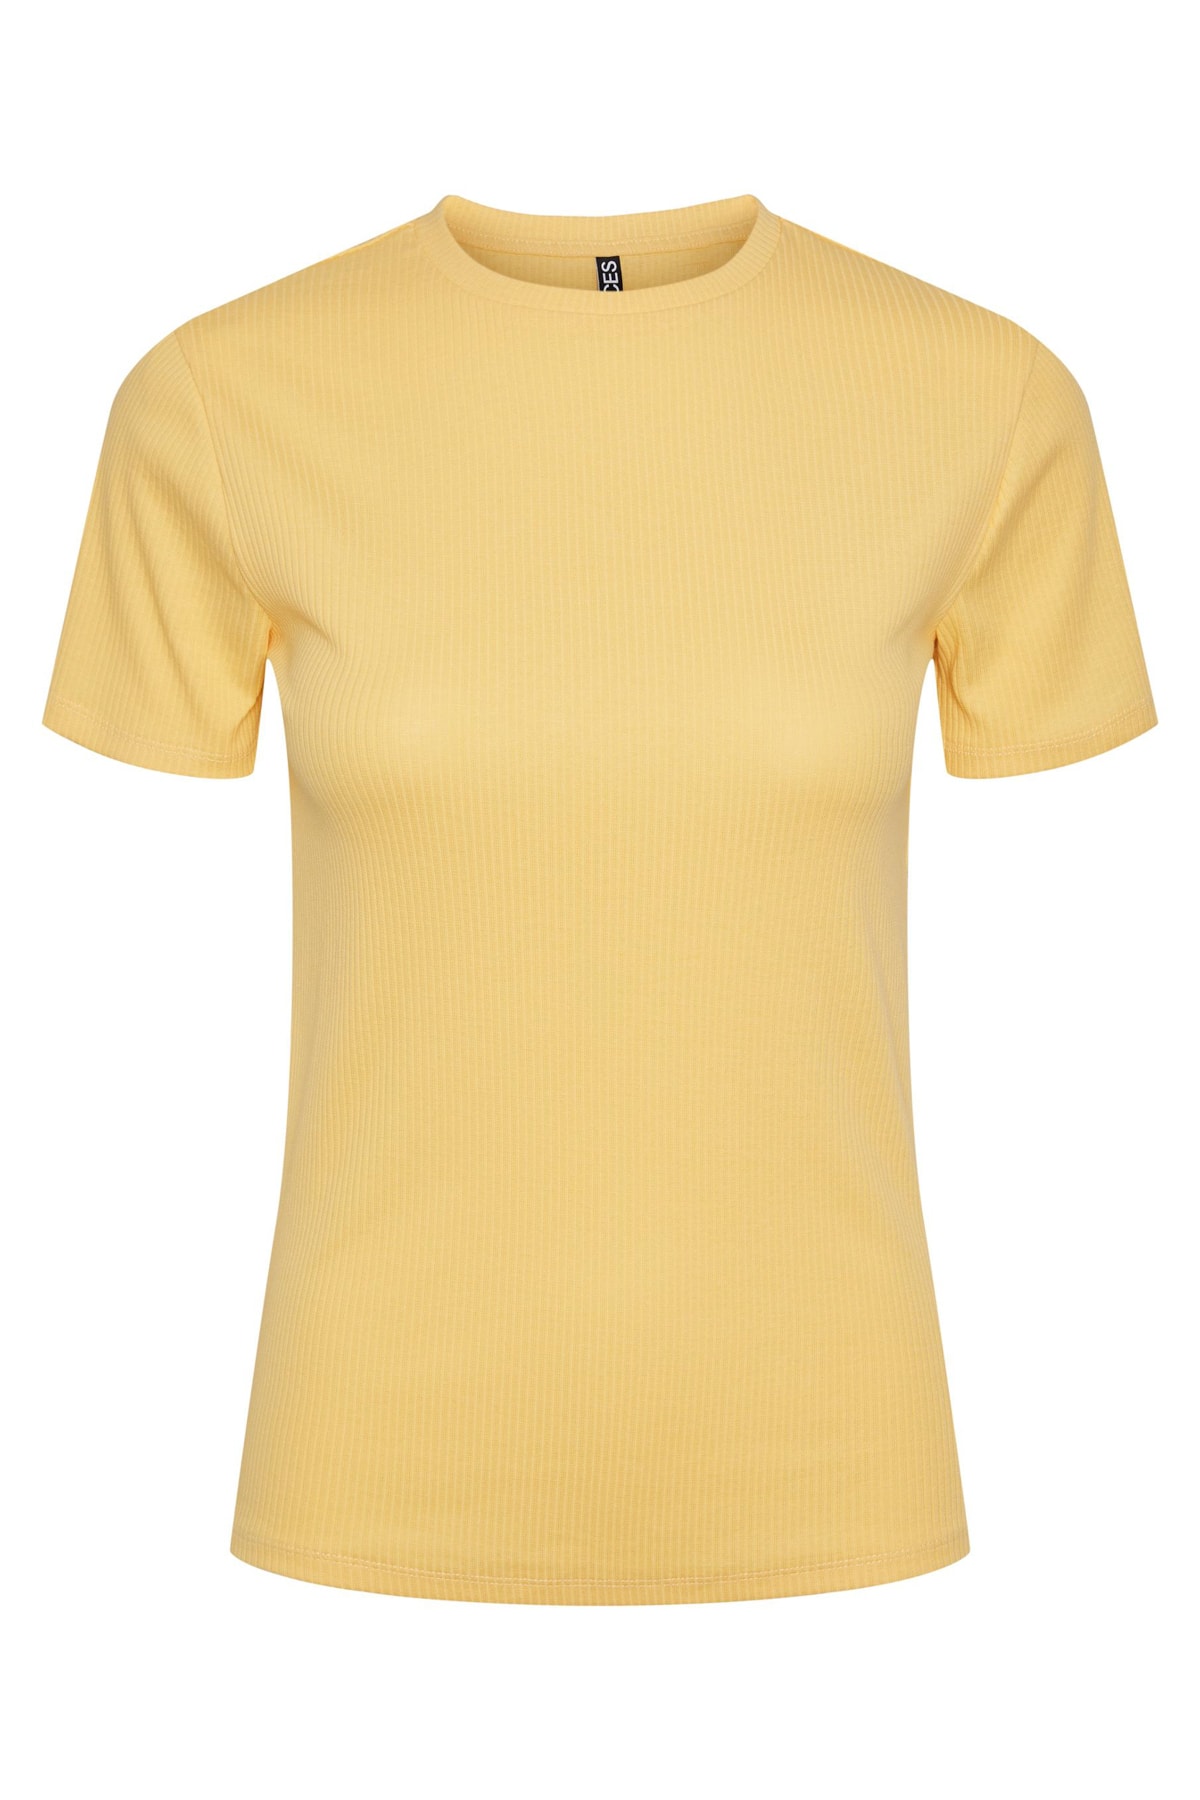 PIECES T-Shirt Gelb Regular Fit Fast ausverkauft